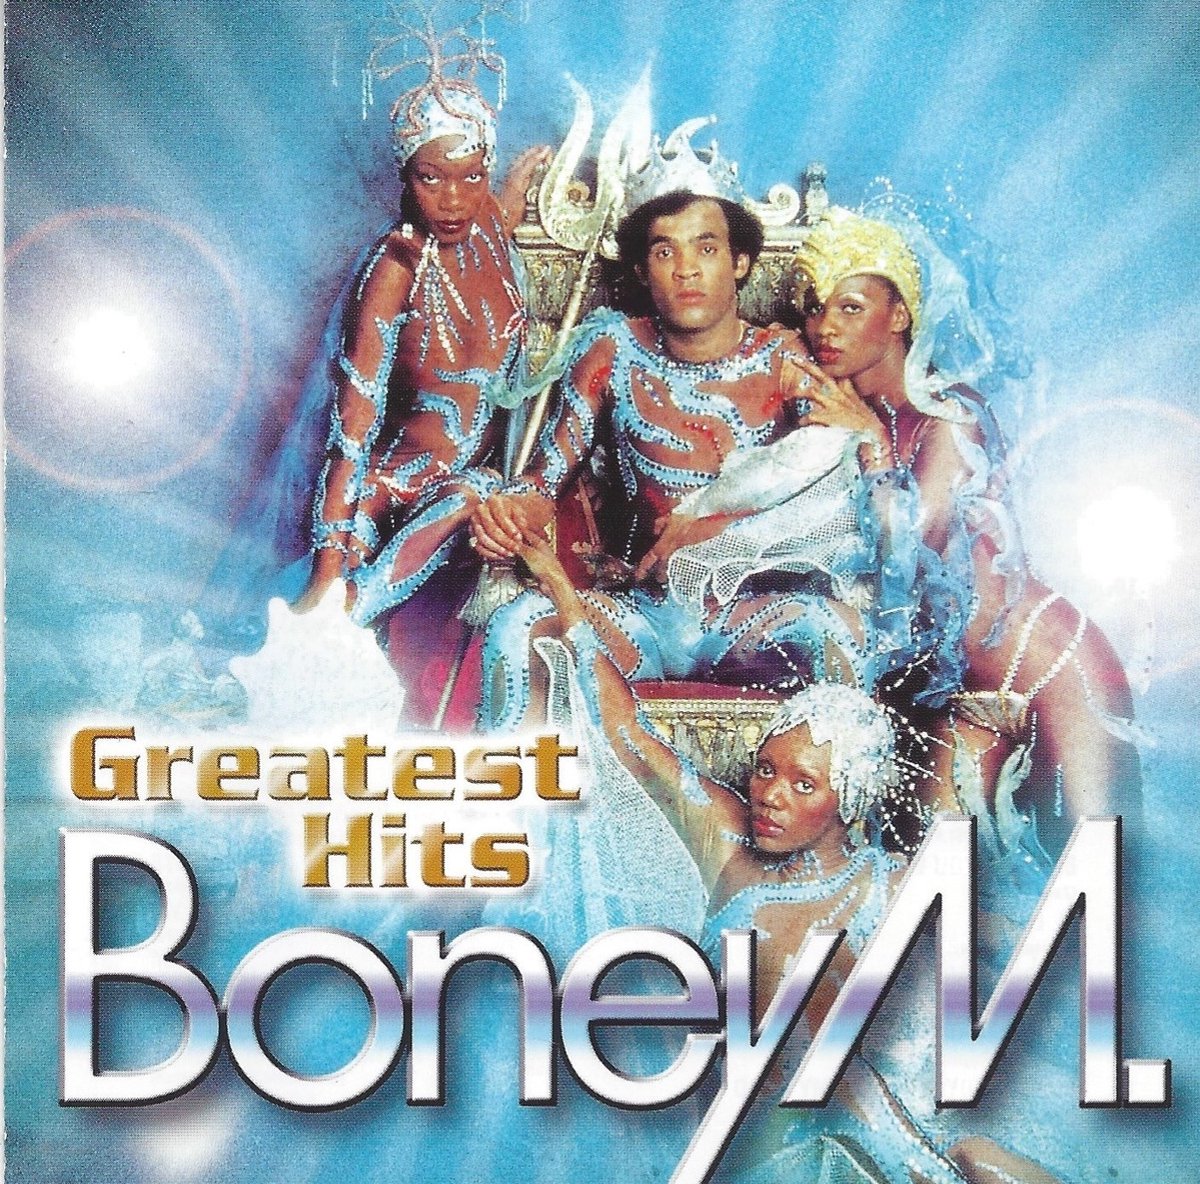 Boney m home. Boney m обложка. Boney m обложки дисков. Бони м обложки дисков. Boney m cd1.